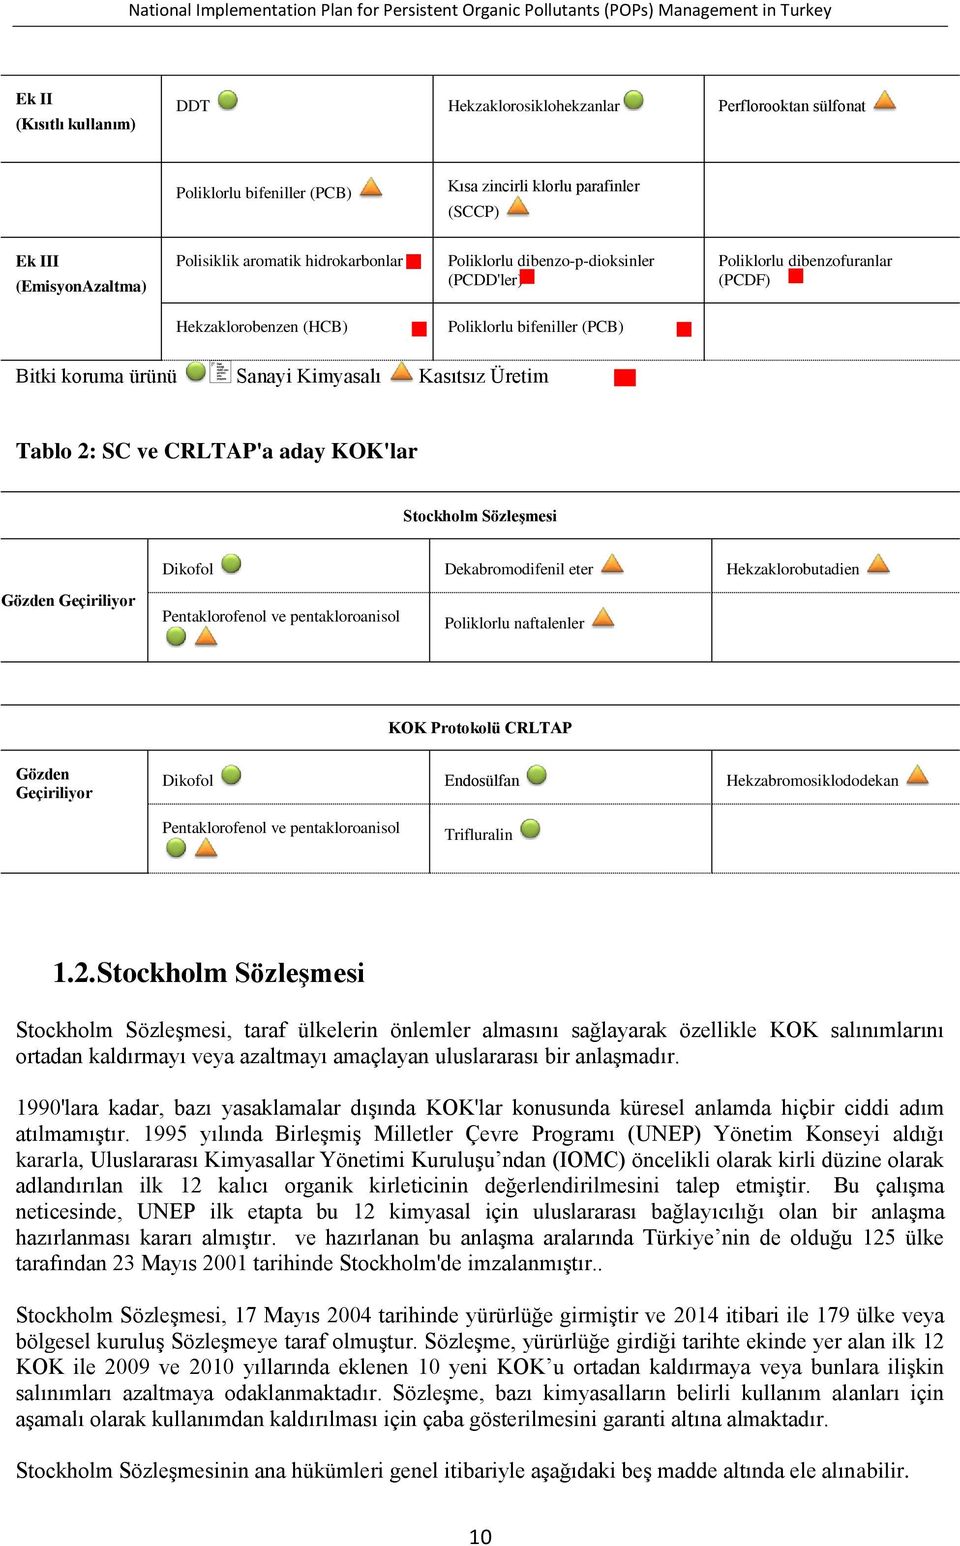 Tablo 2: SC ve CRLTAP'a aday KOK'lar Stockholm Sözleşmesi Dikofol Dekabromodifenil eter Hekzaklorobutadien Gözden Geçiriliyor Pentaklorofenol ve pentakloroanisol Poliklorlu naftalenler KOK Protokolü